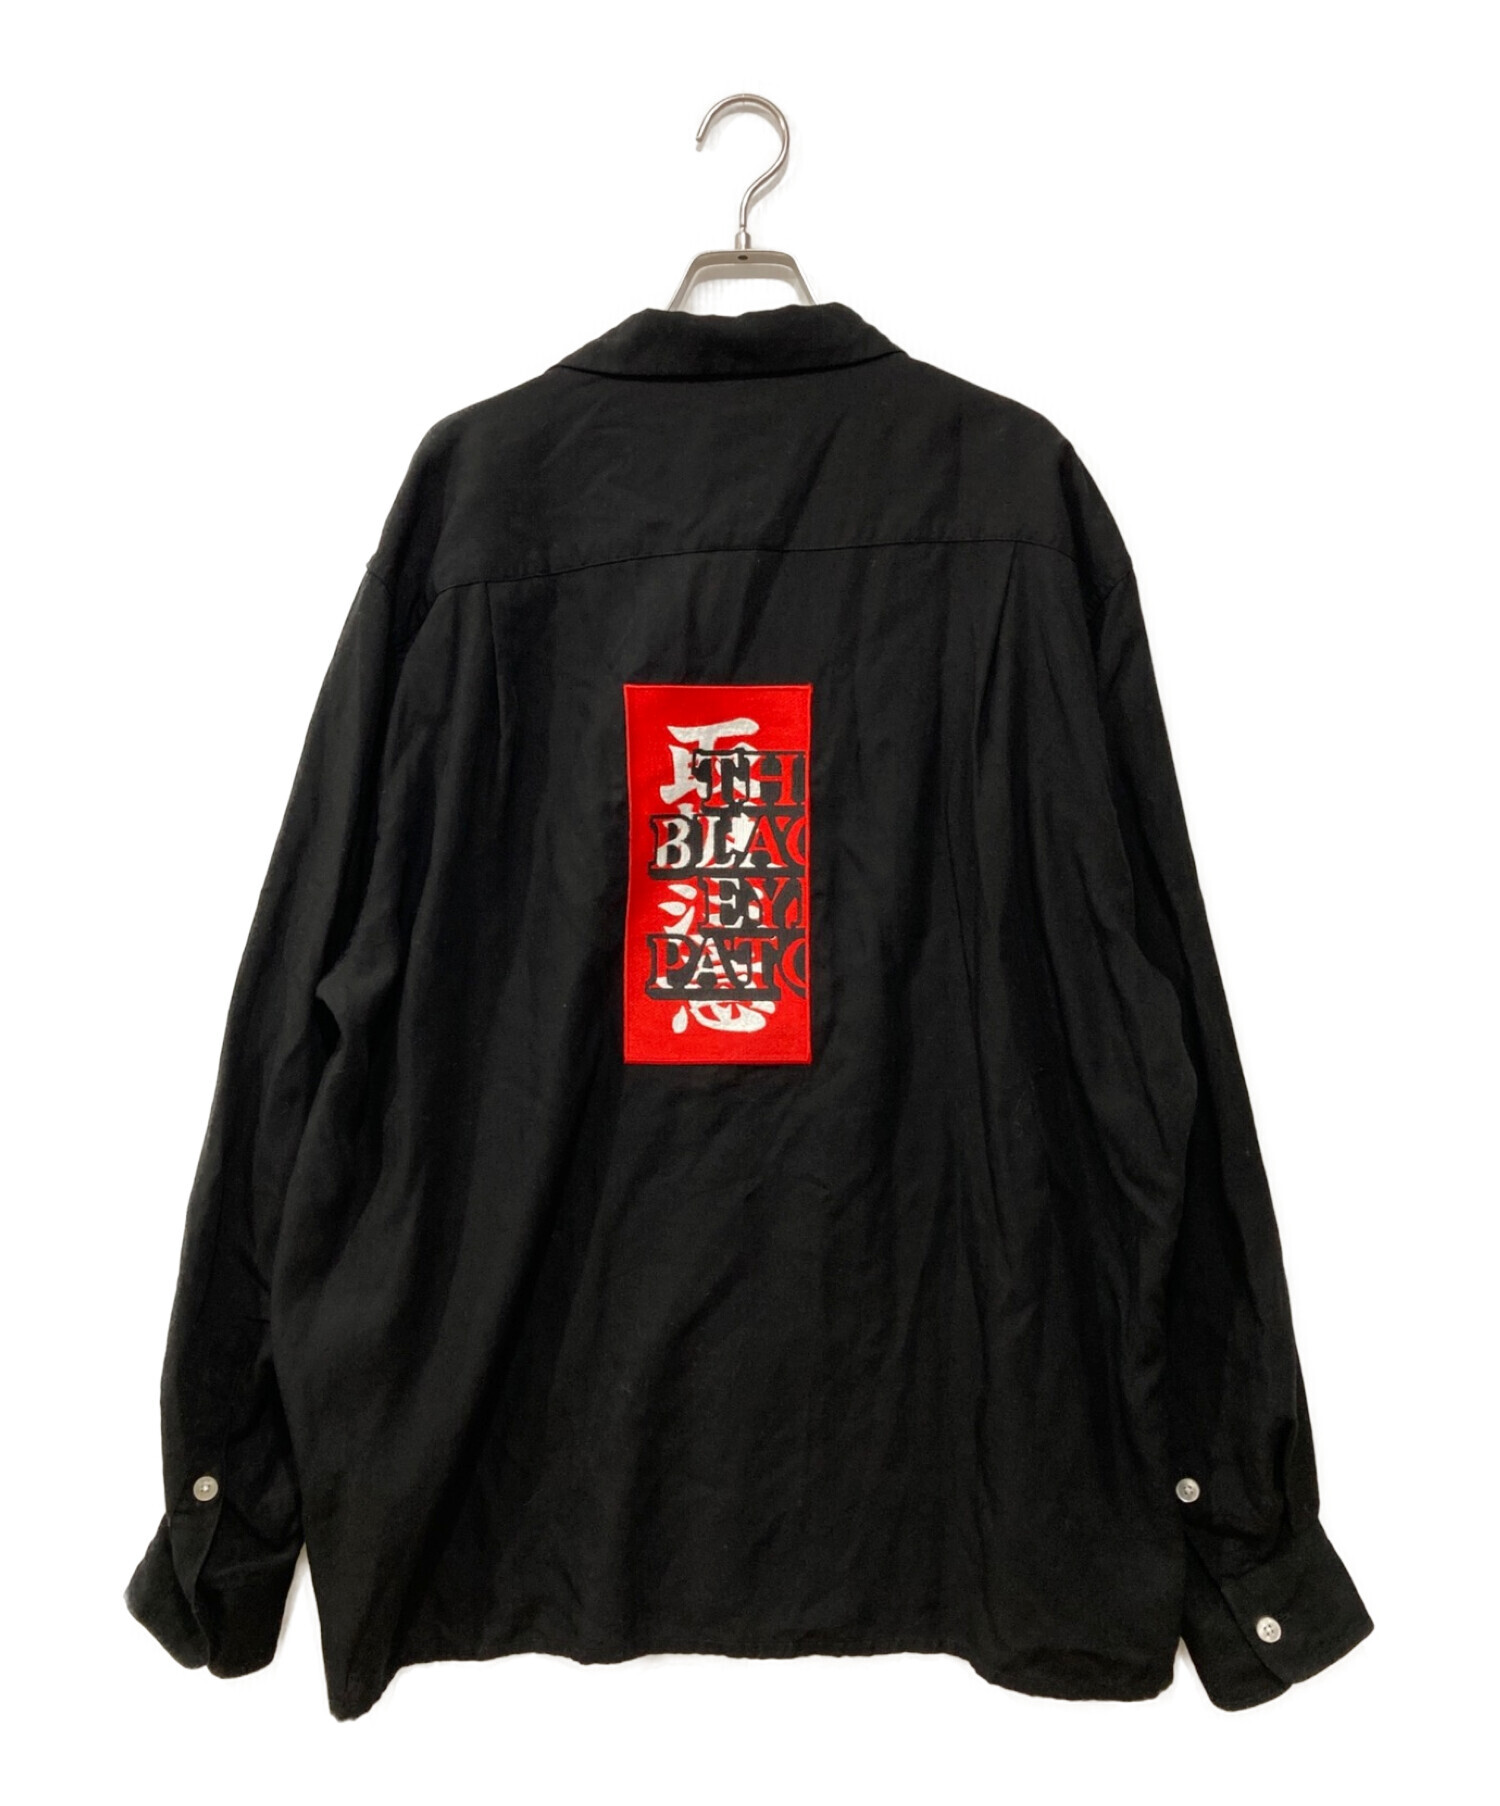 WACKO MARIA (ワコマリア) BlackEyePatch (ブラックアイパッチ) 50'sオープンカラーシャツ ブラック サイズ:L